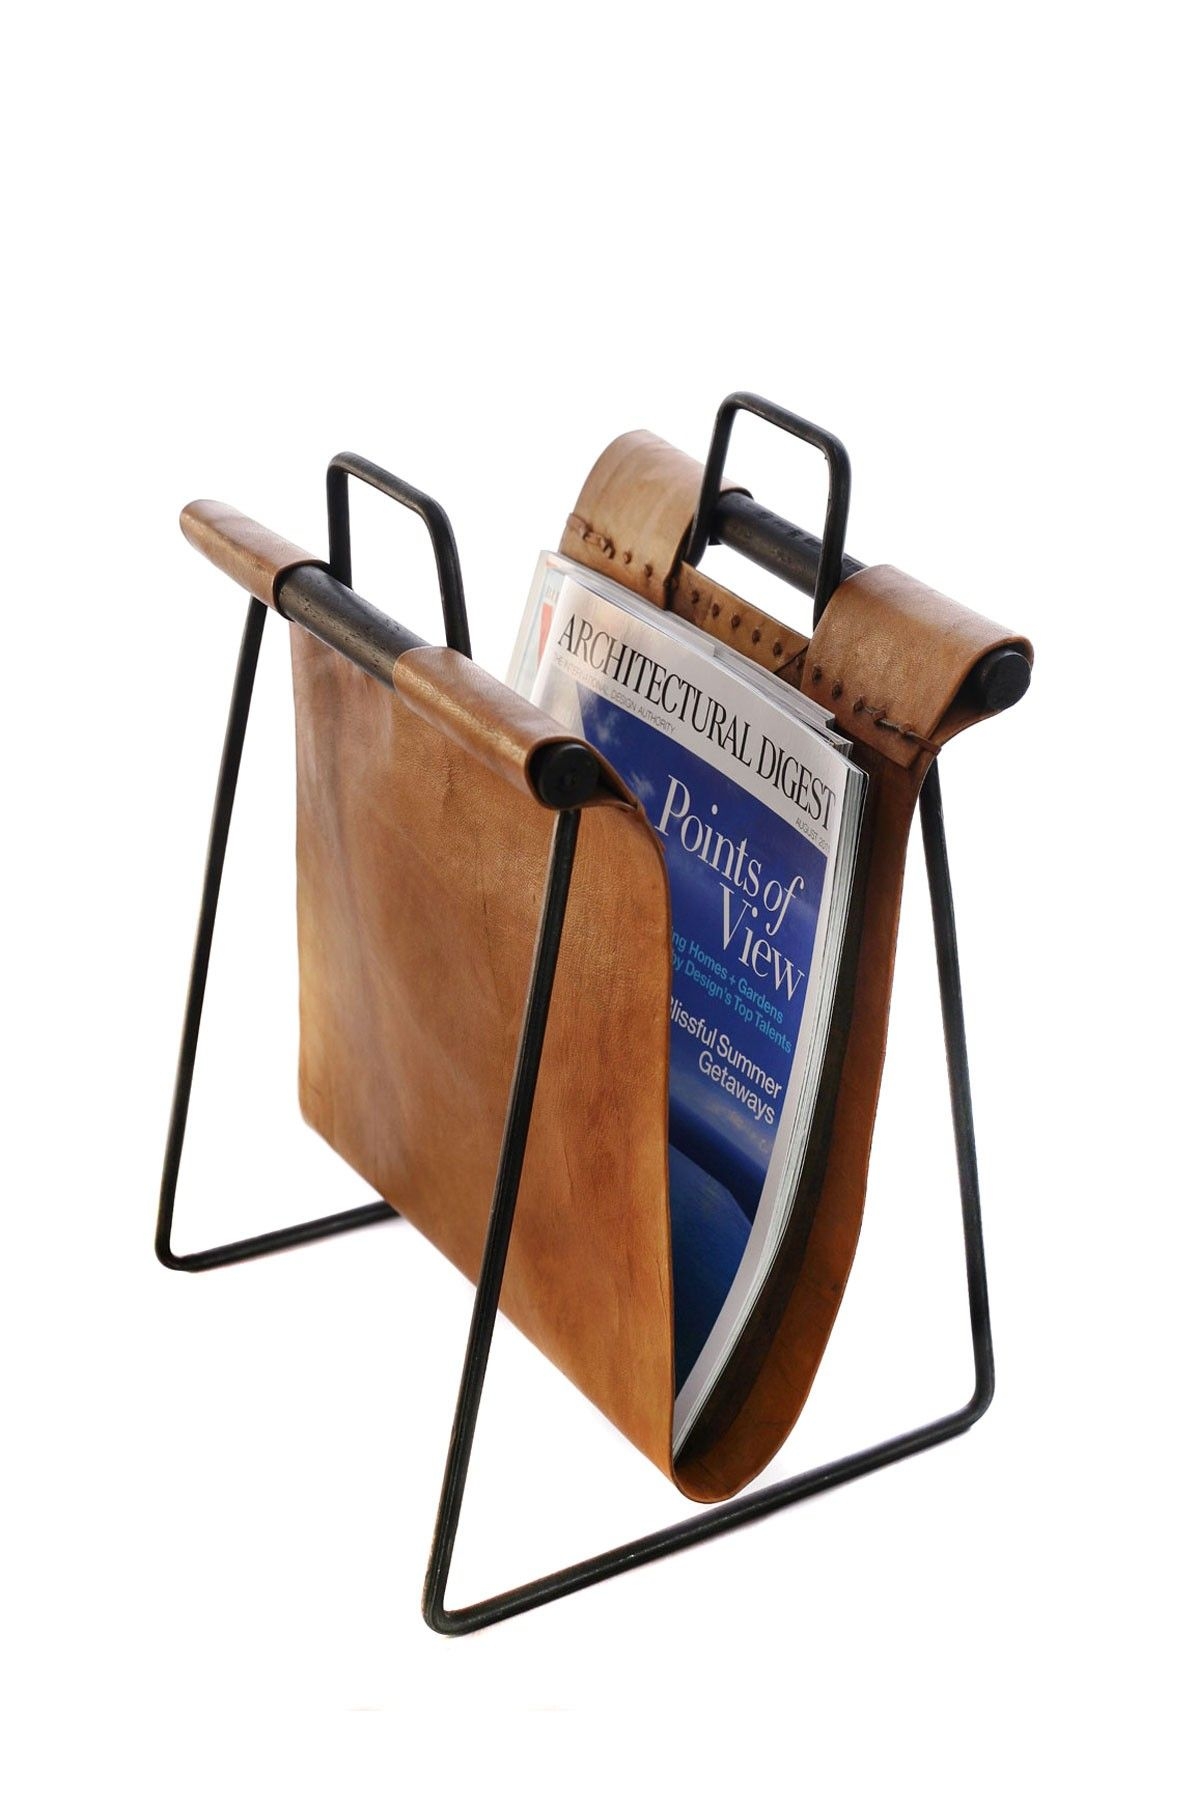 Ldc home iron leather magazine rack